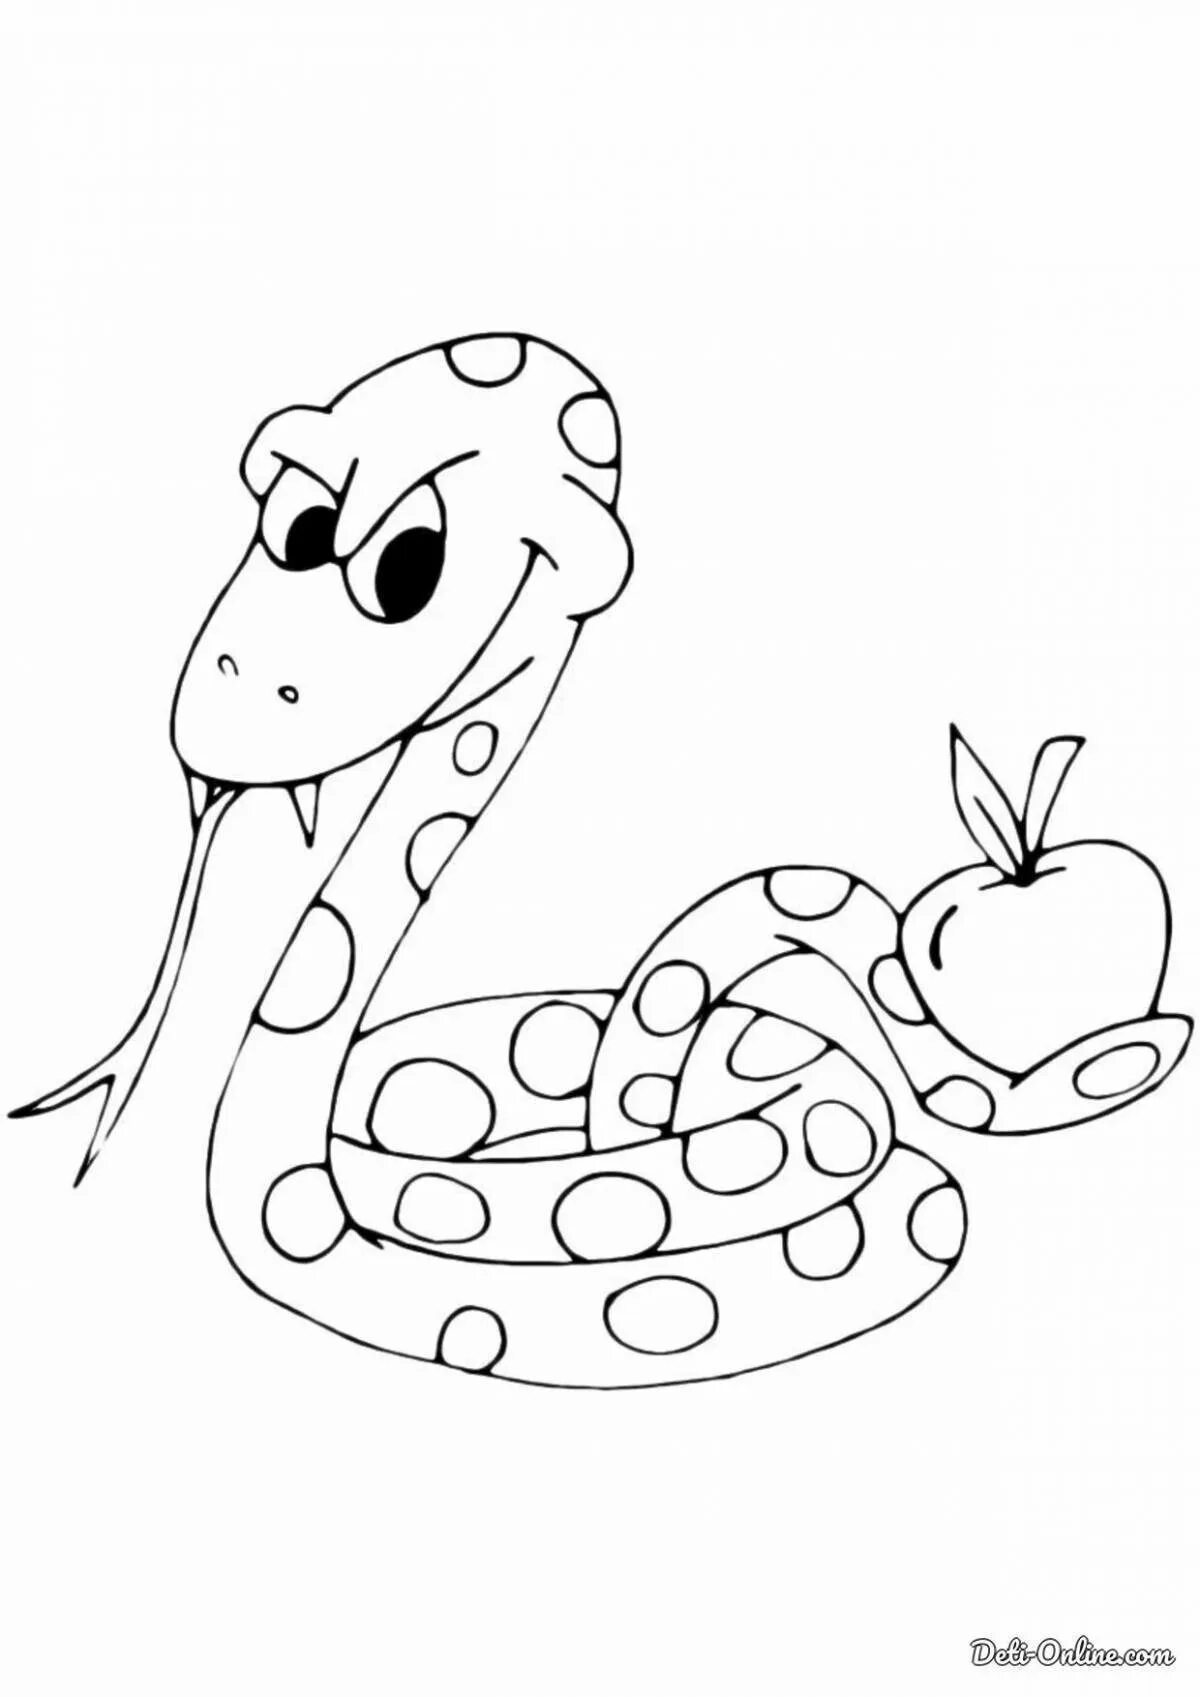 Раскраска змей для детей. Раскраска змеи. Змейка раскраска. Раскраска змеи для детей. Змея картинка раскраска.